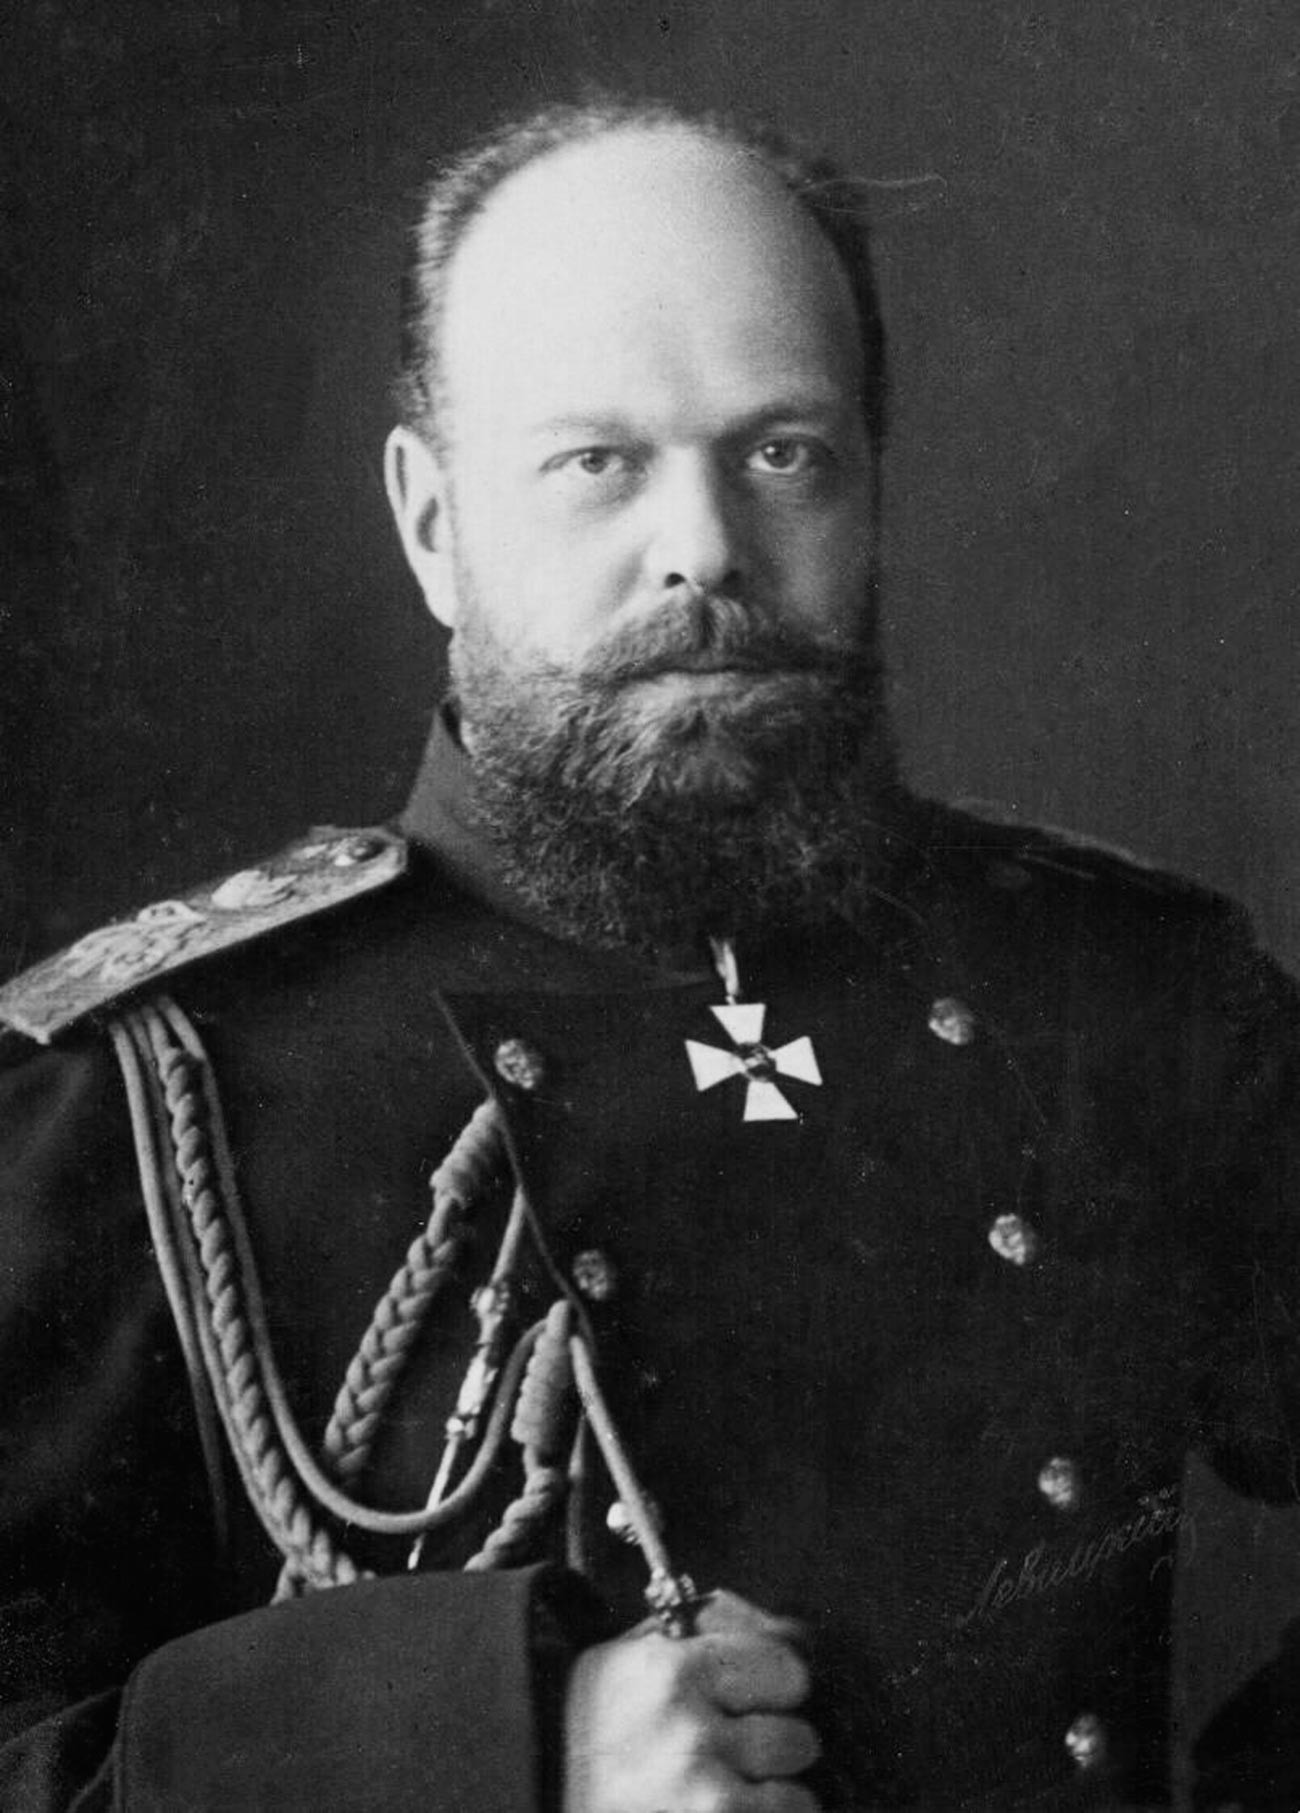 Alexander III, Emperor of Russia